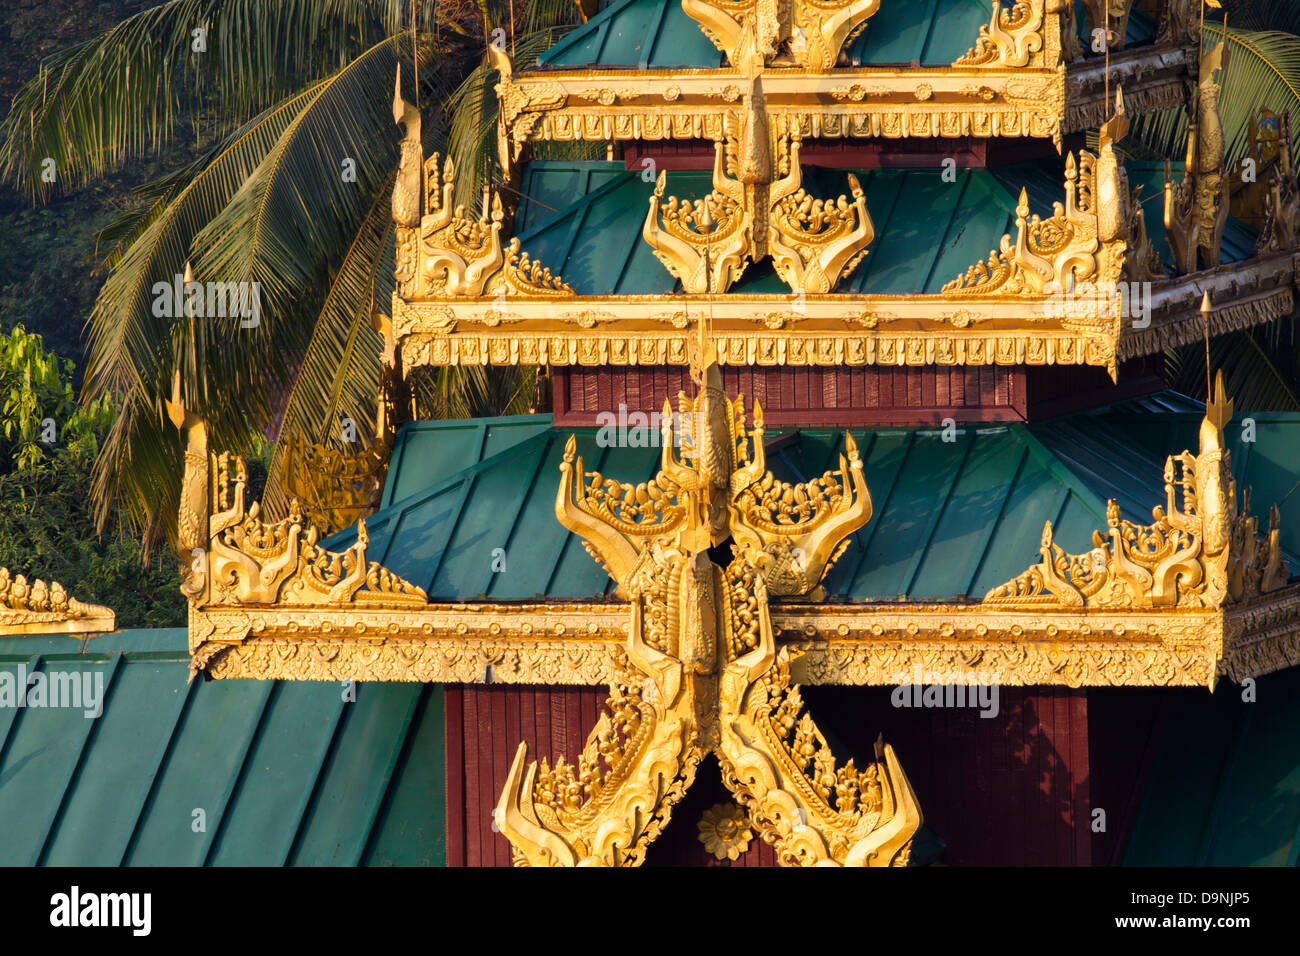 Einer der das Dach erhebt sich am Rande der Shwedagon Burmas heiliger Tempel im Herzen von Rangun. Stockfoto